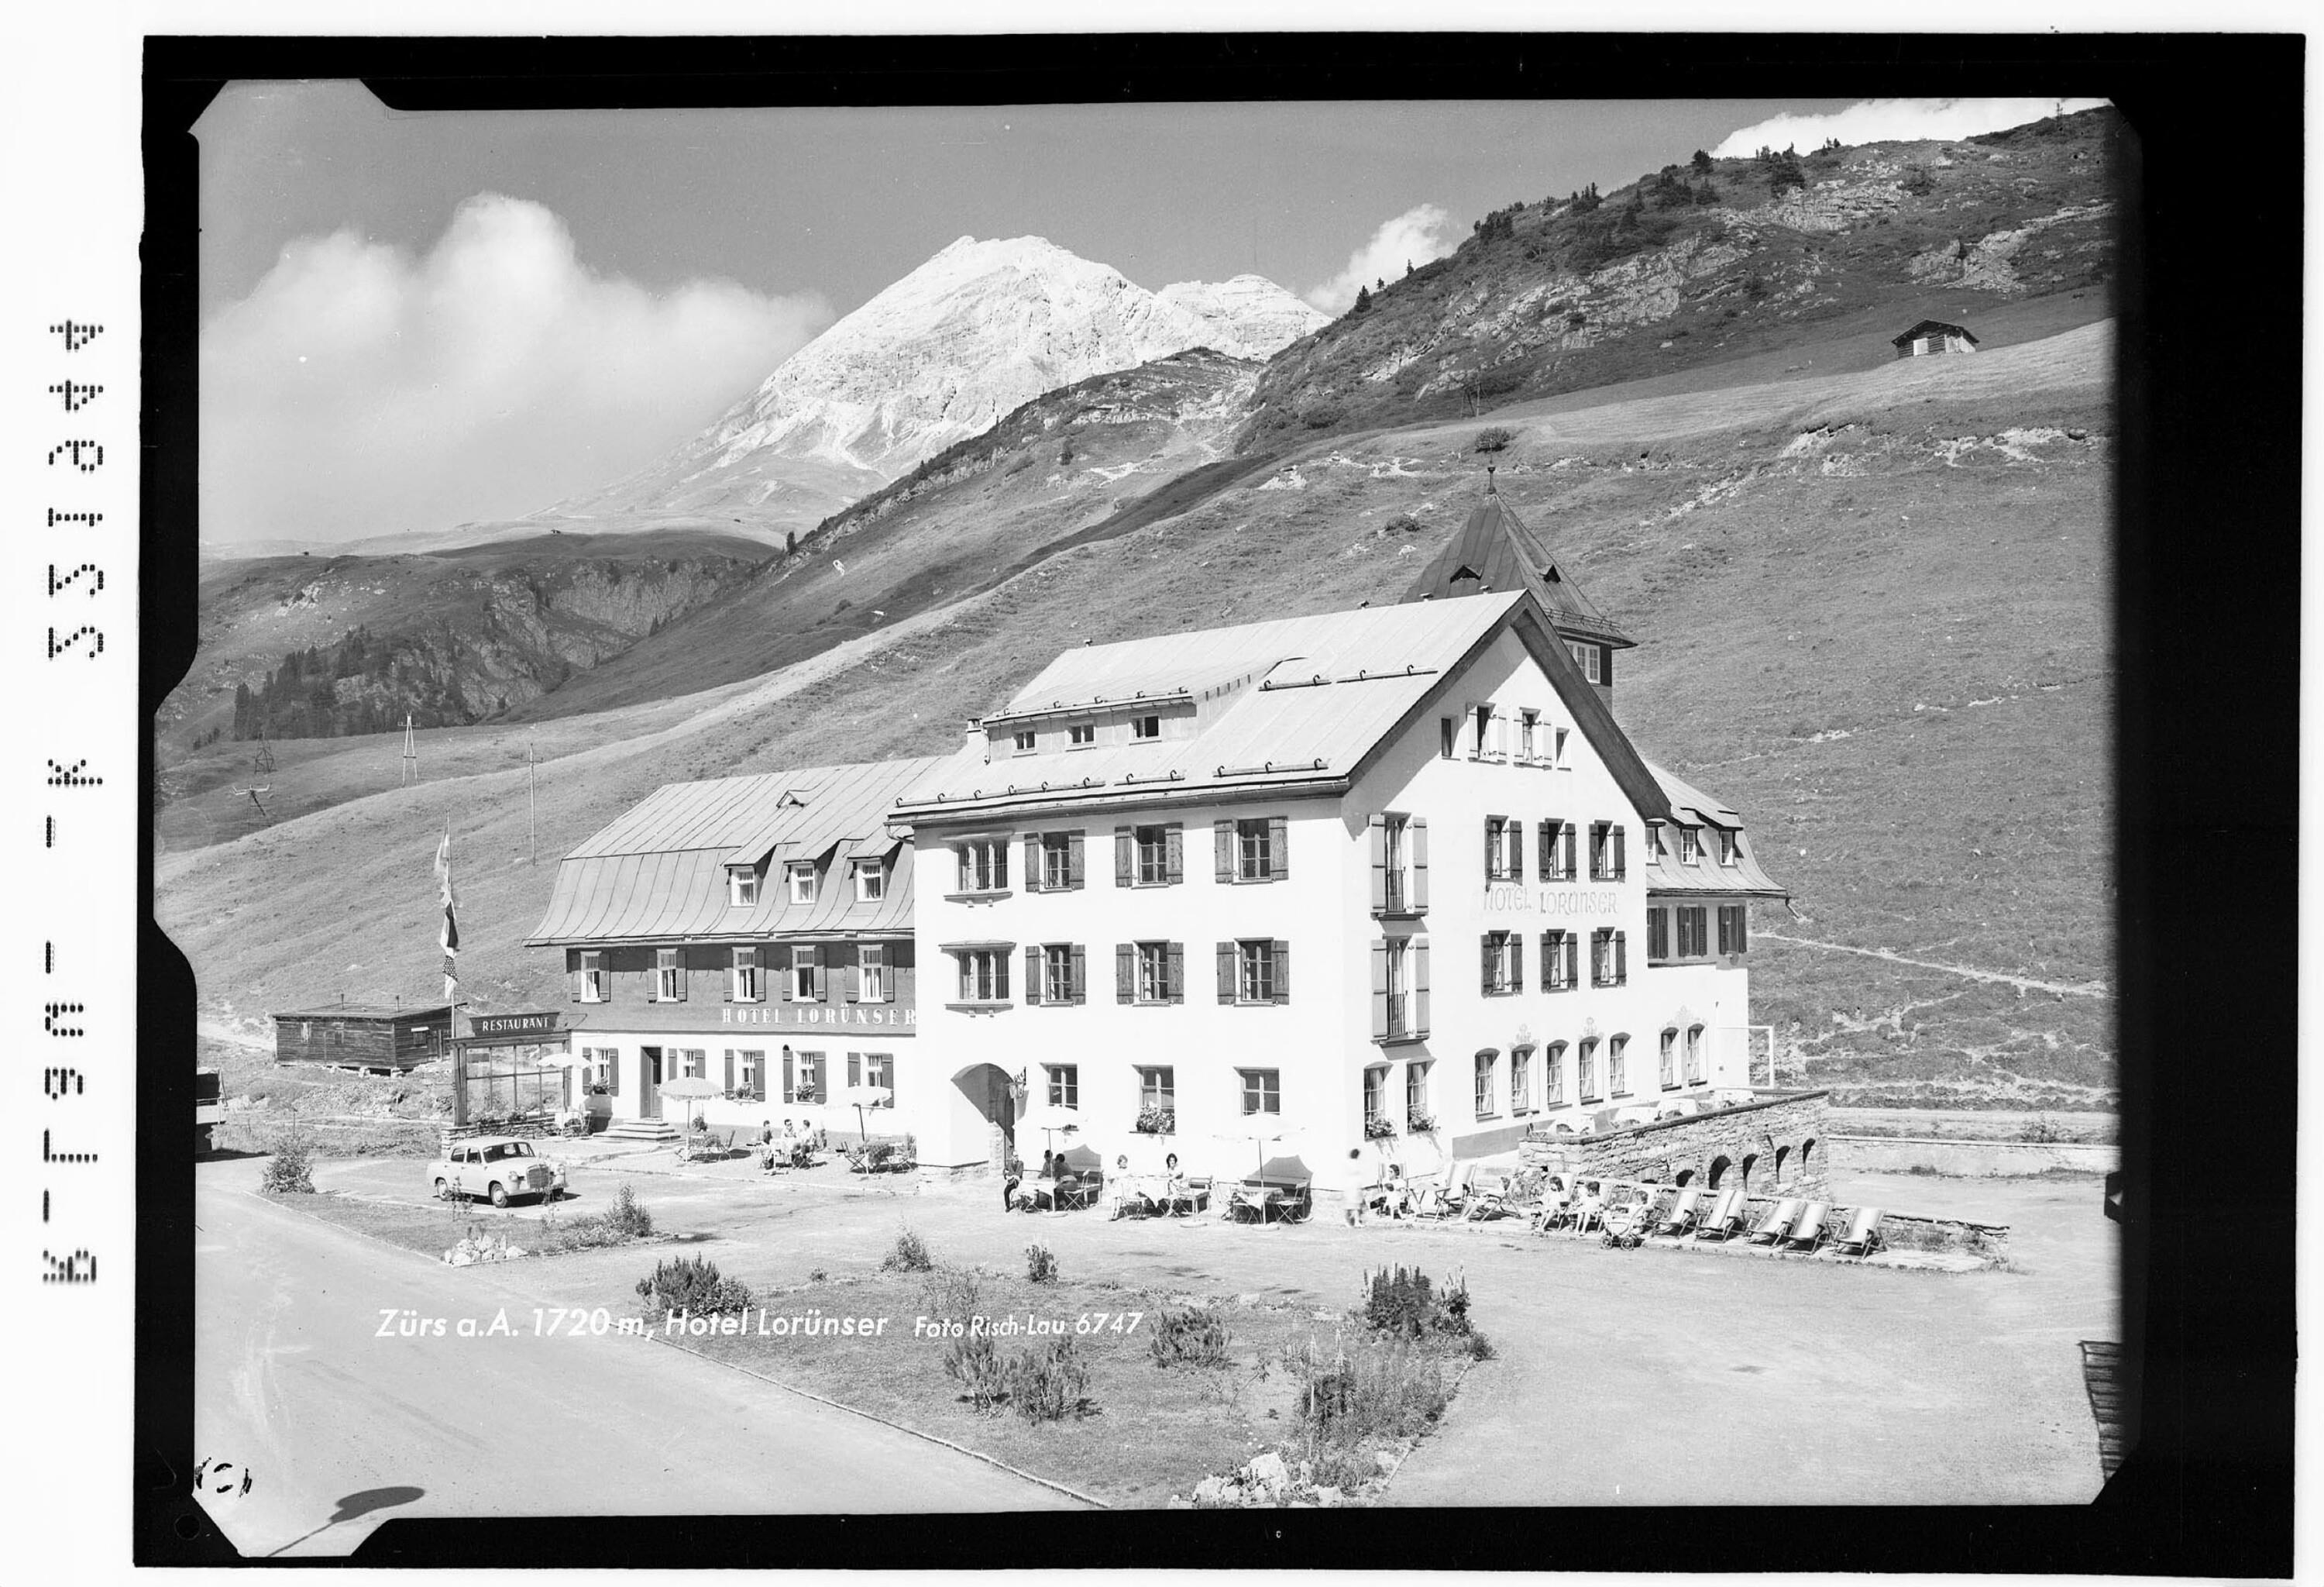 Zürs am Arlberg 1720 m / Hotel Lorünser></div>


    <hr>
    <div class=